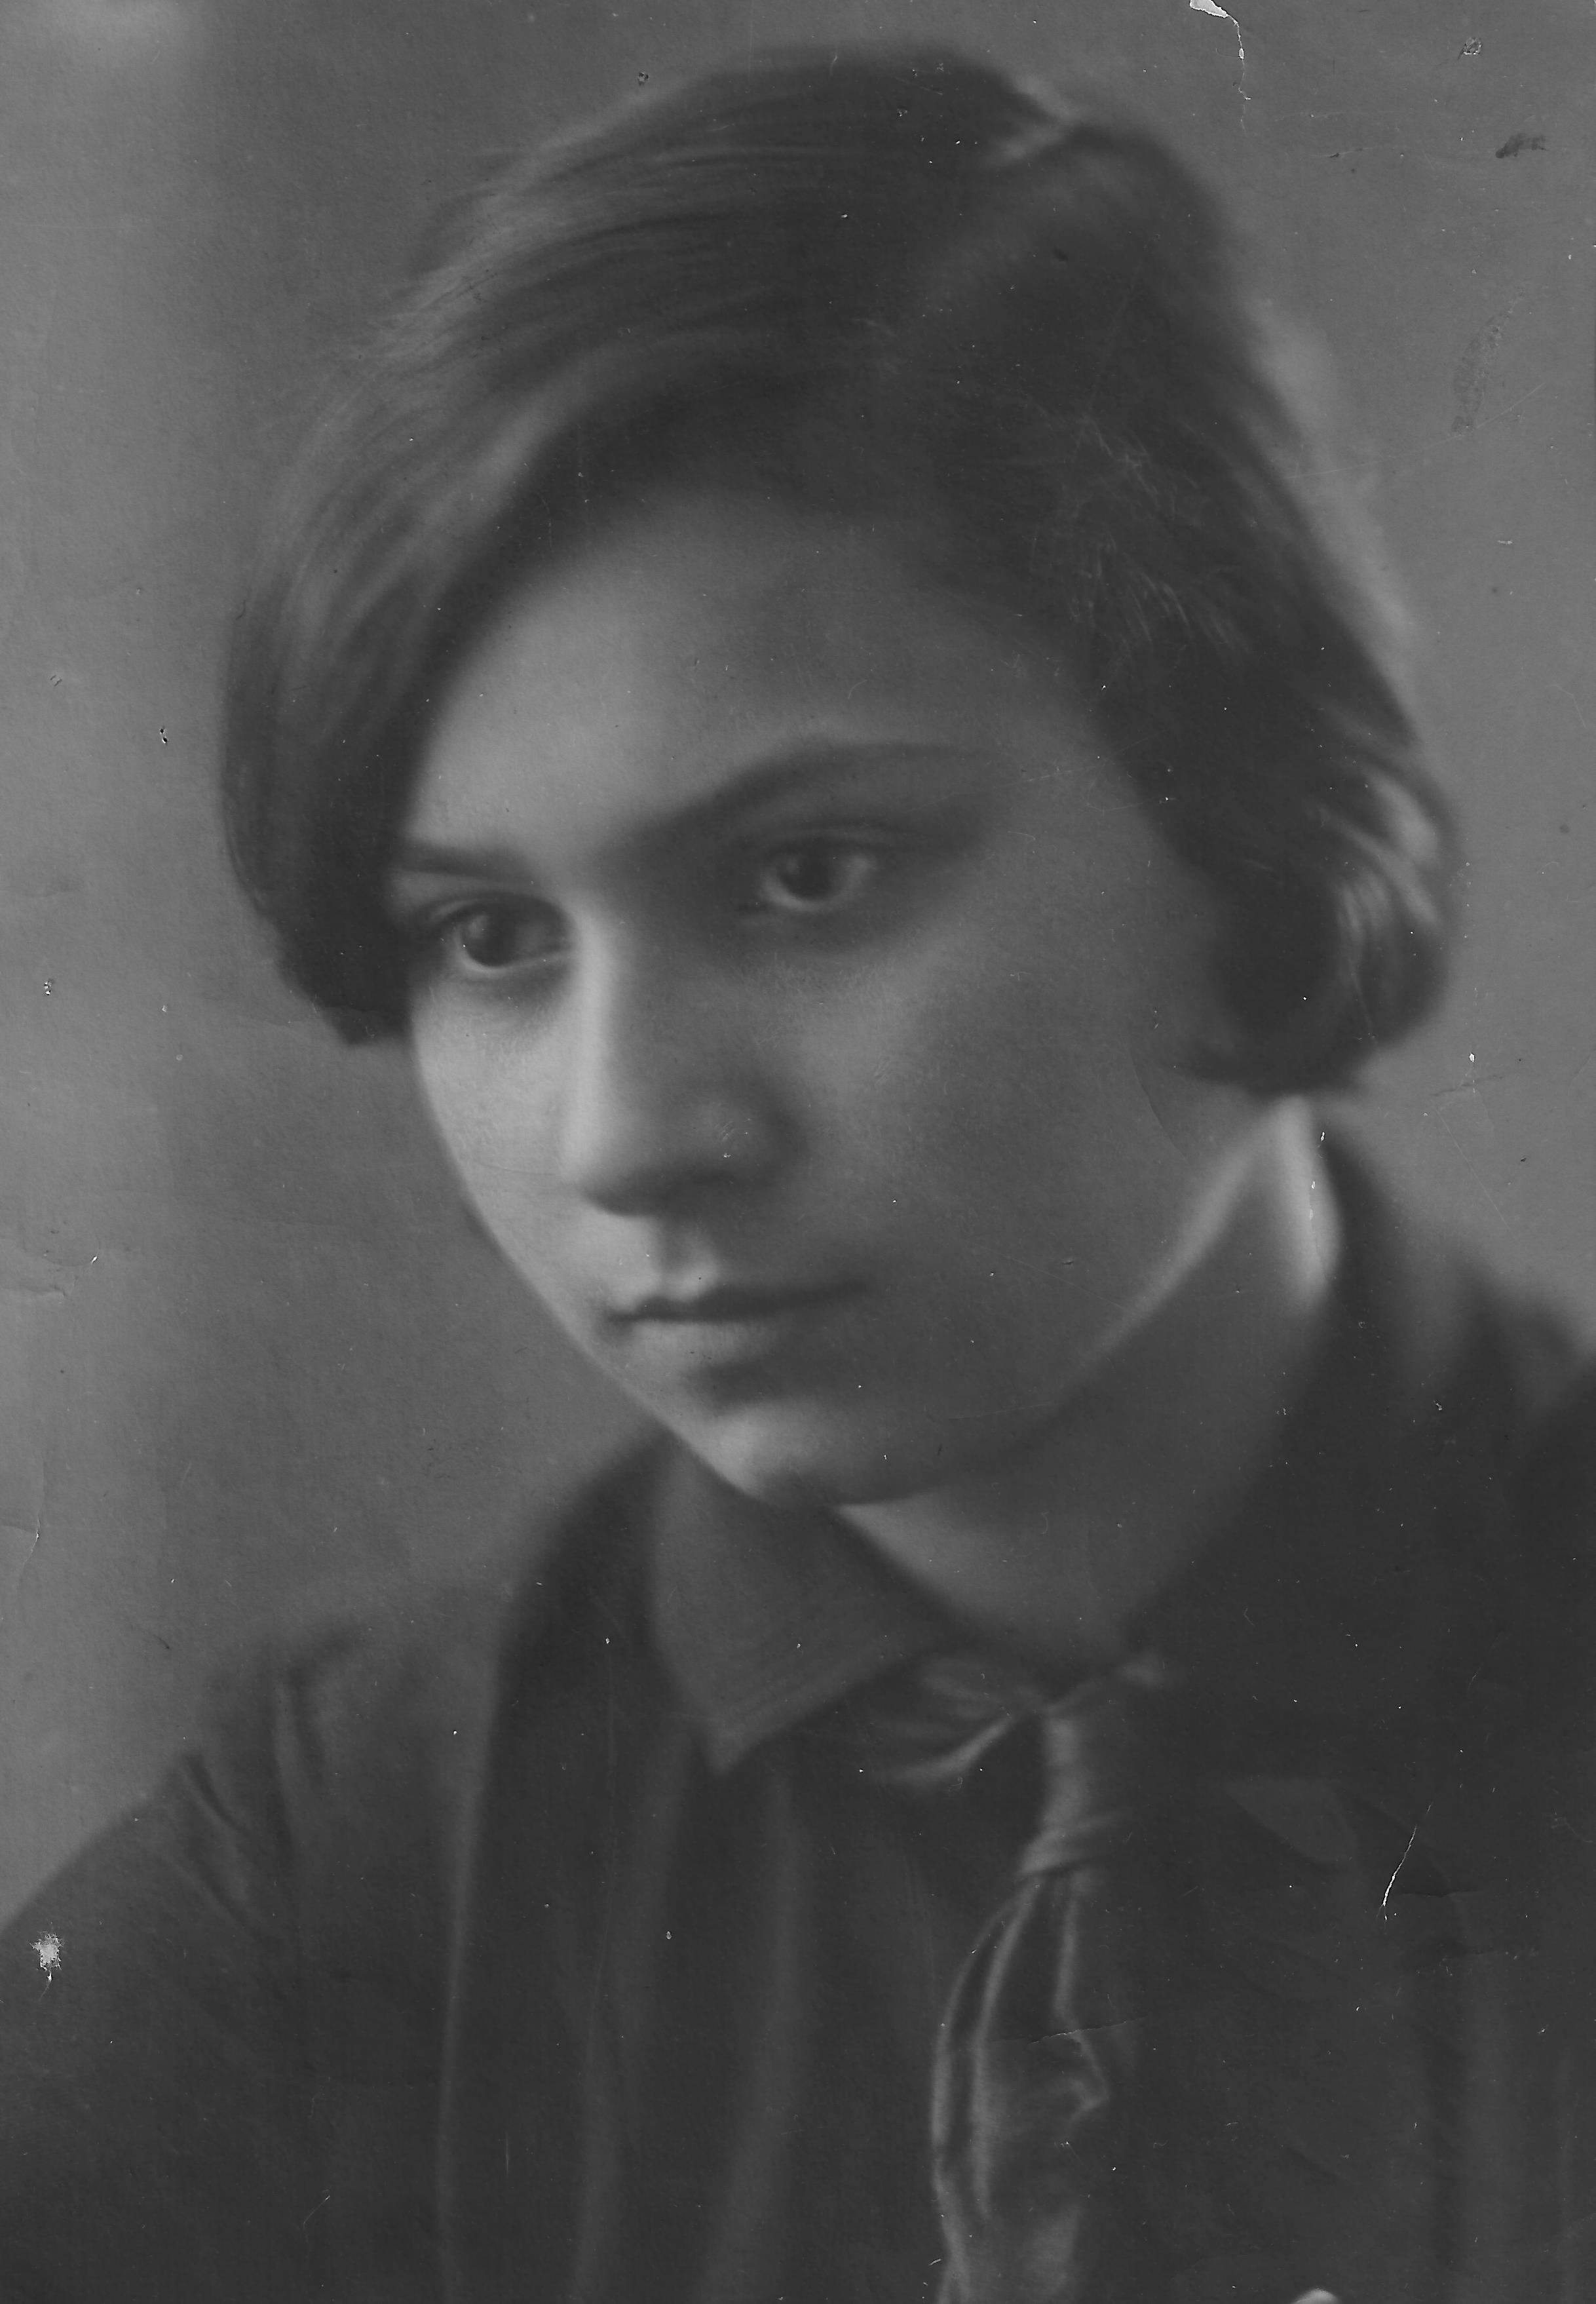   Anita Galliussi a Ivanovo, nel 1939